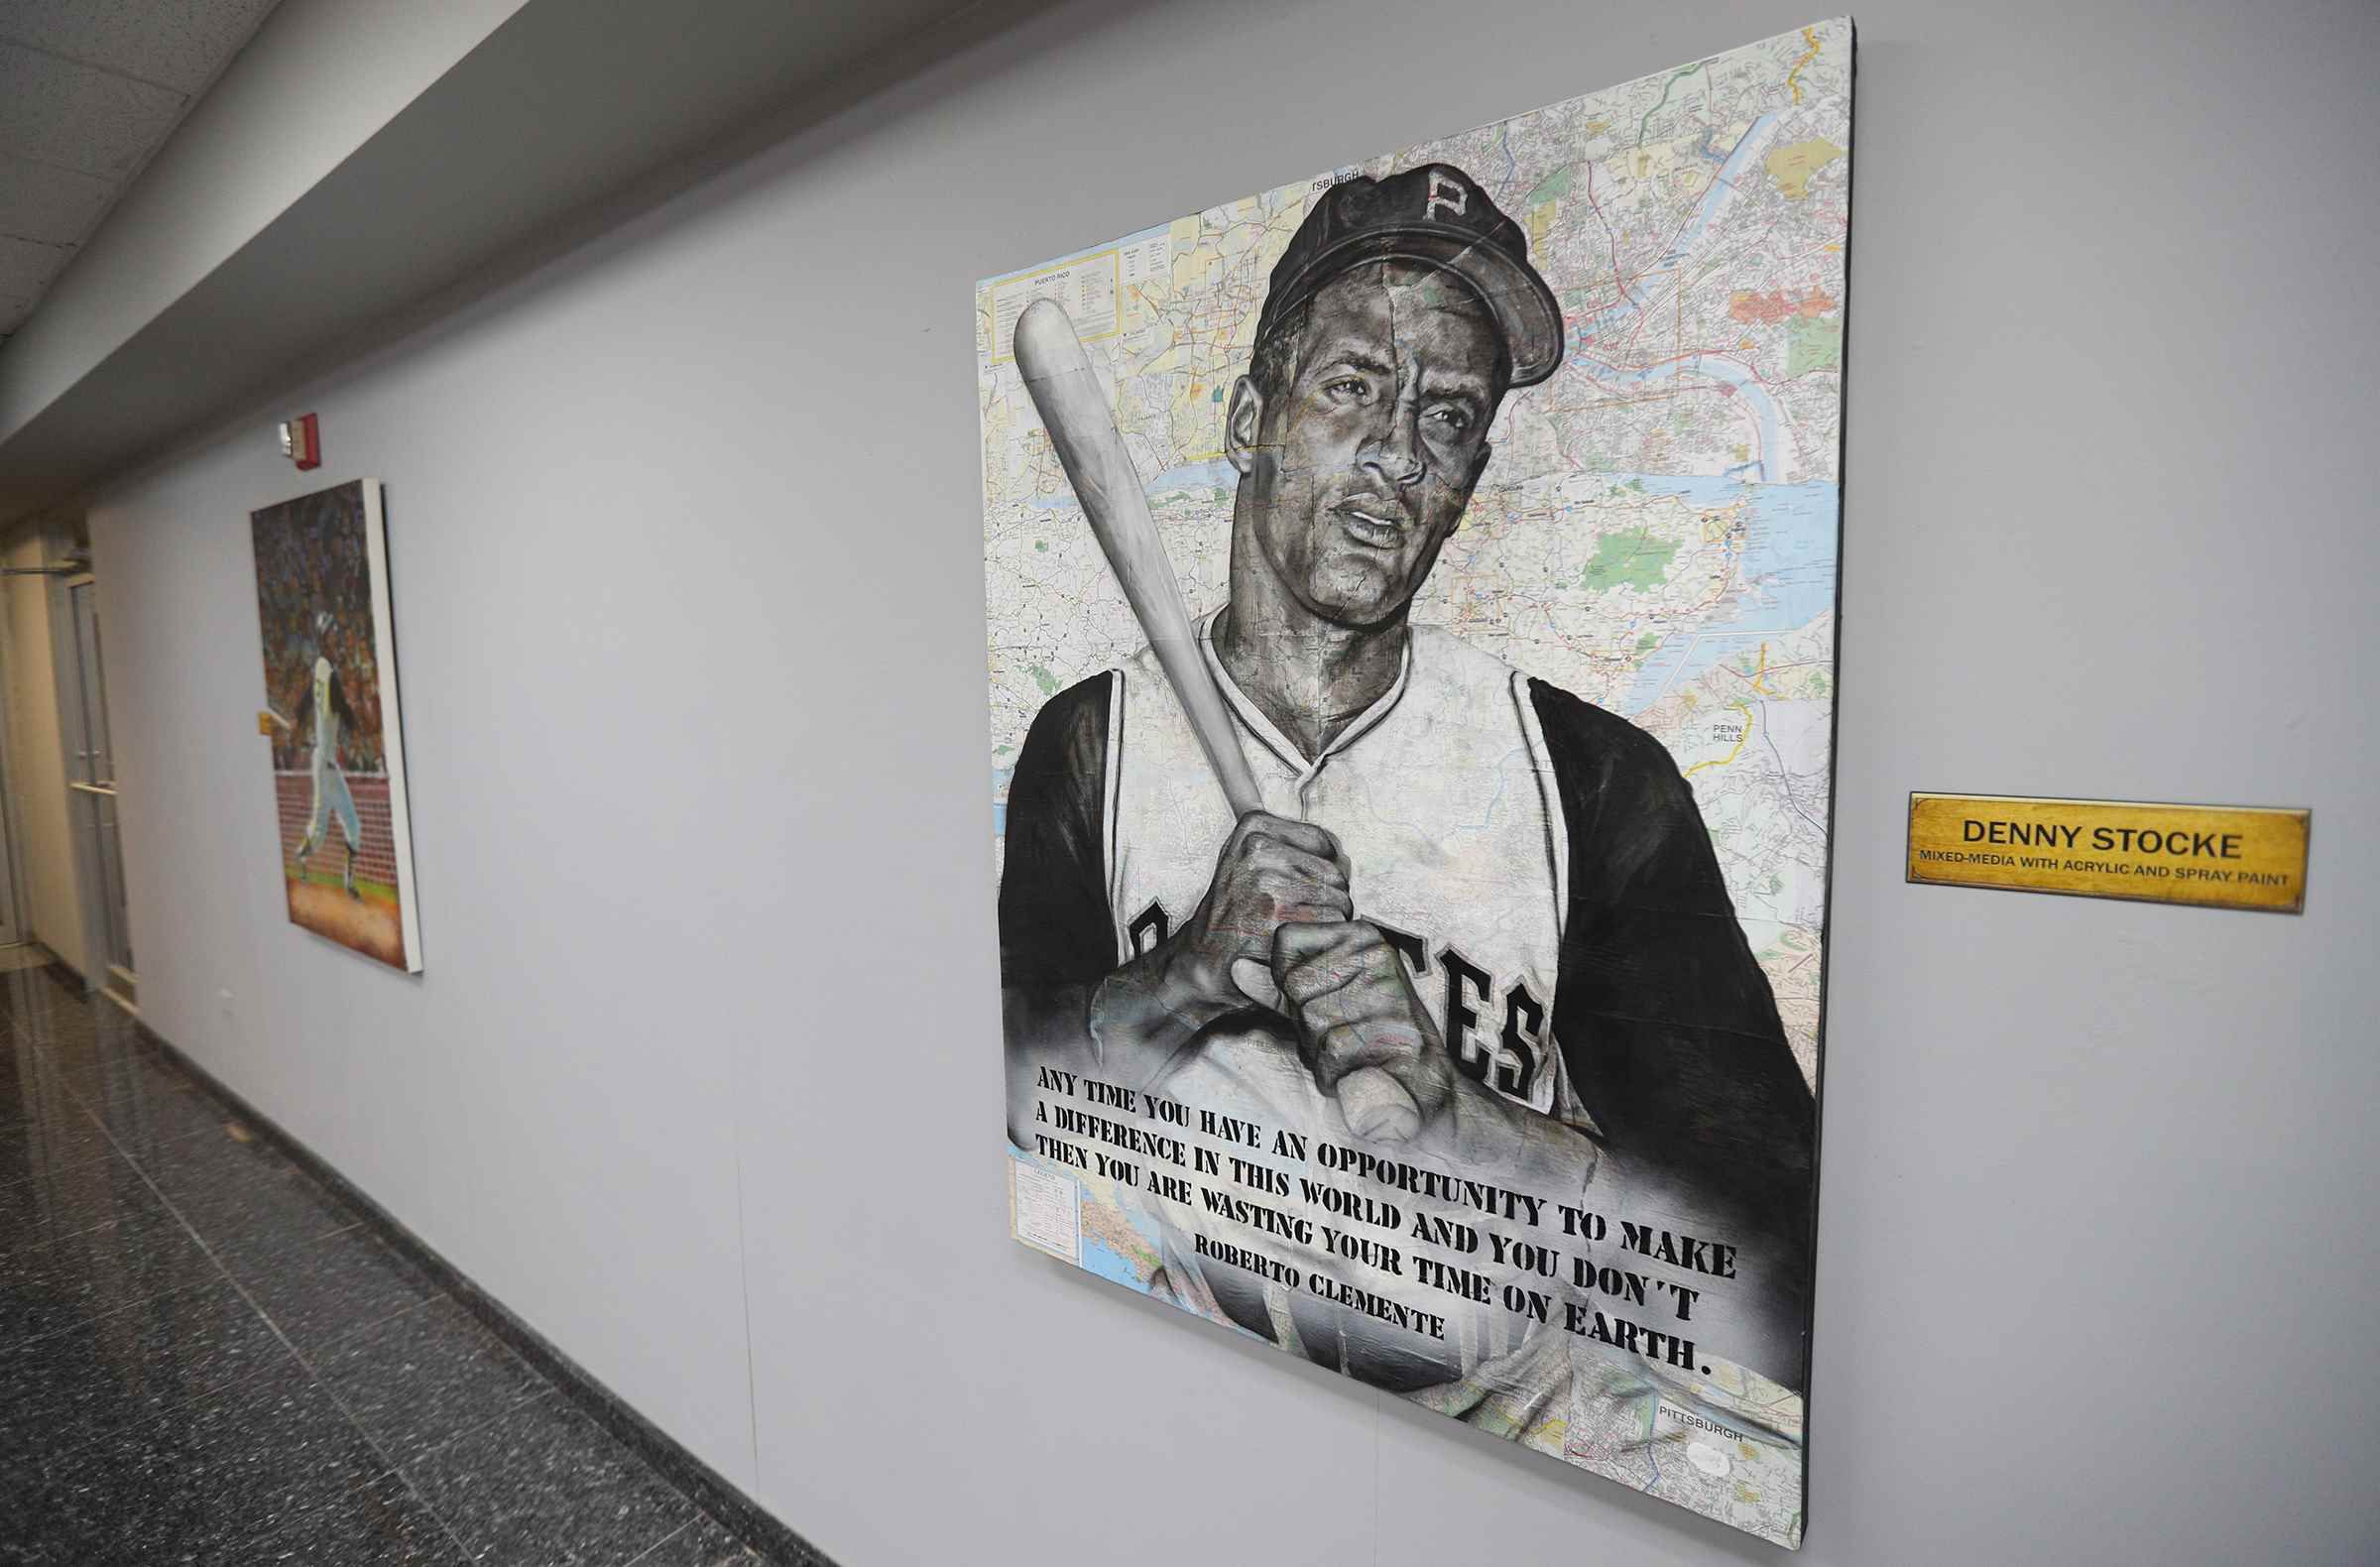 La exhibición “3,000” de Roberto Clemente se traslada a Pittsburgh